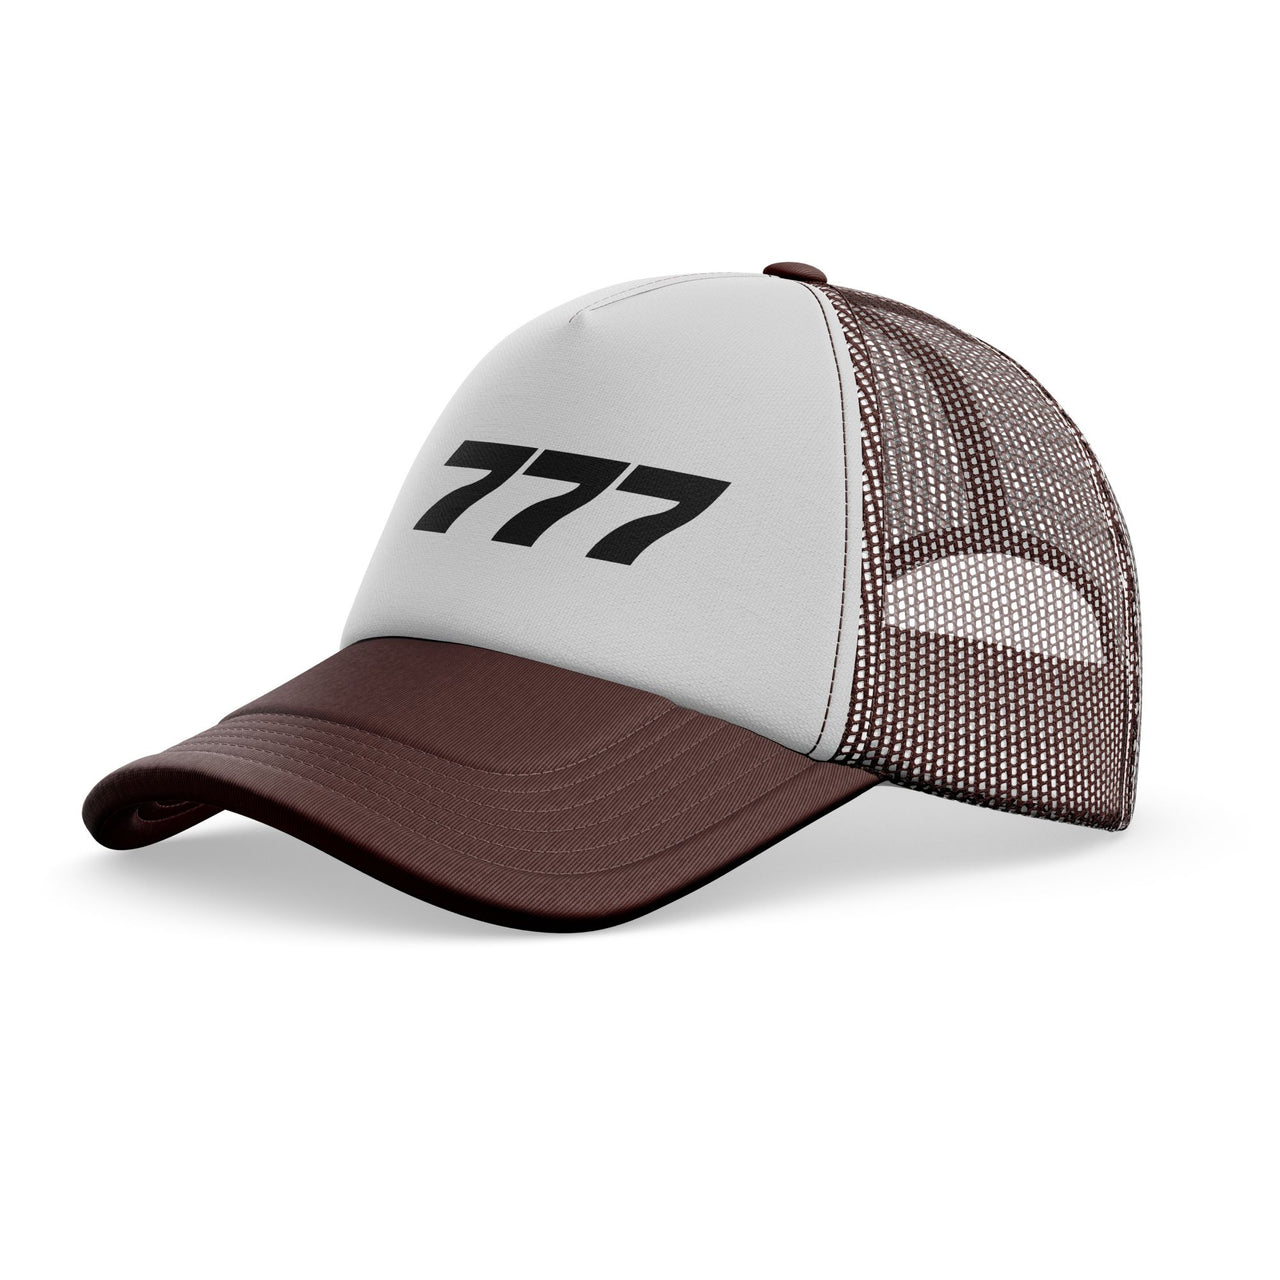 777 Flat Text Designed Trucker Caps & Hats